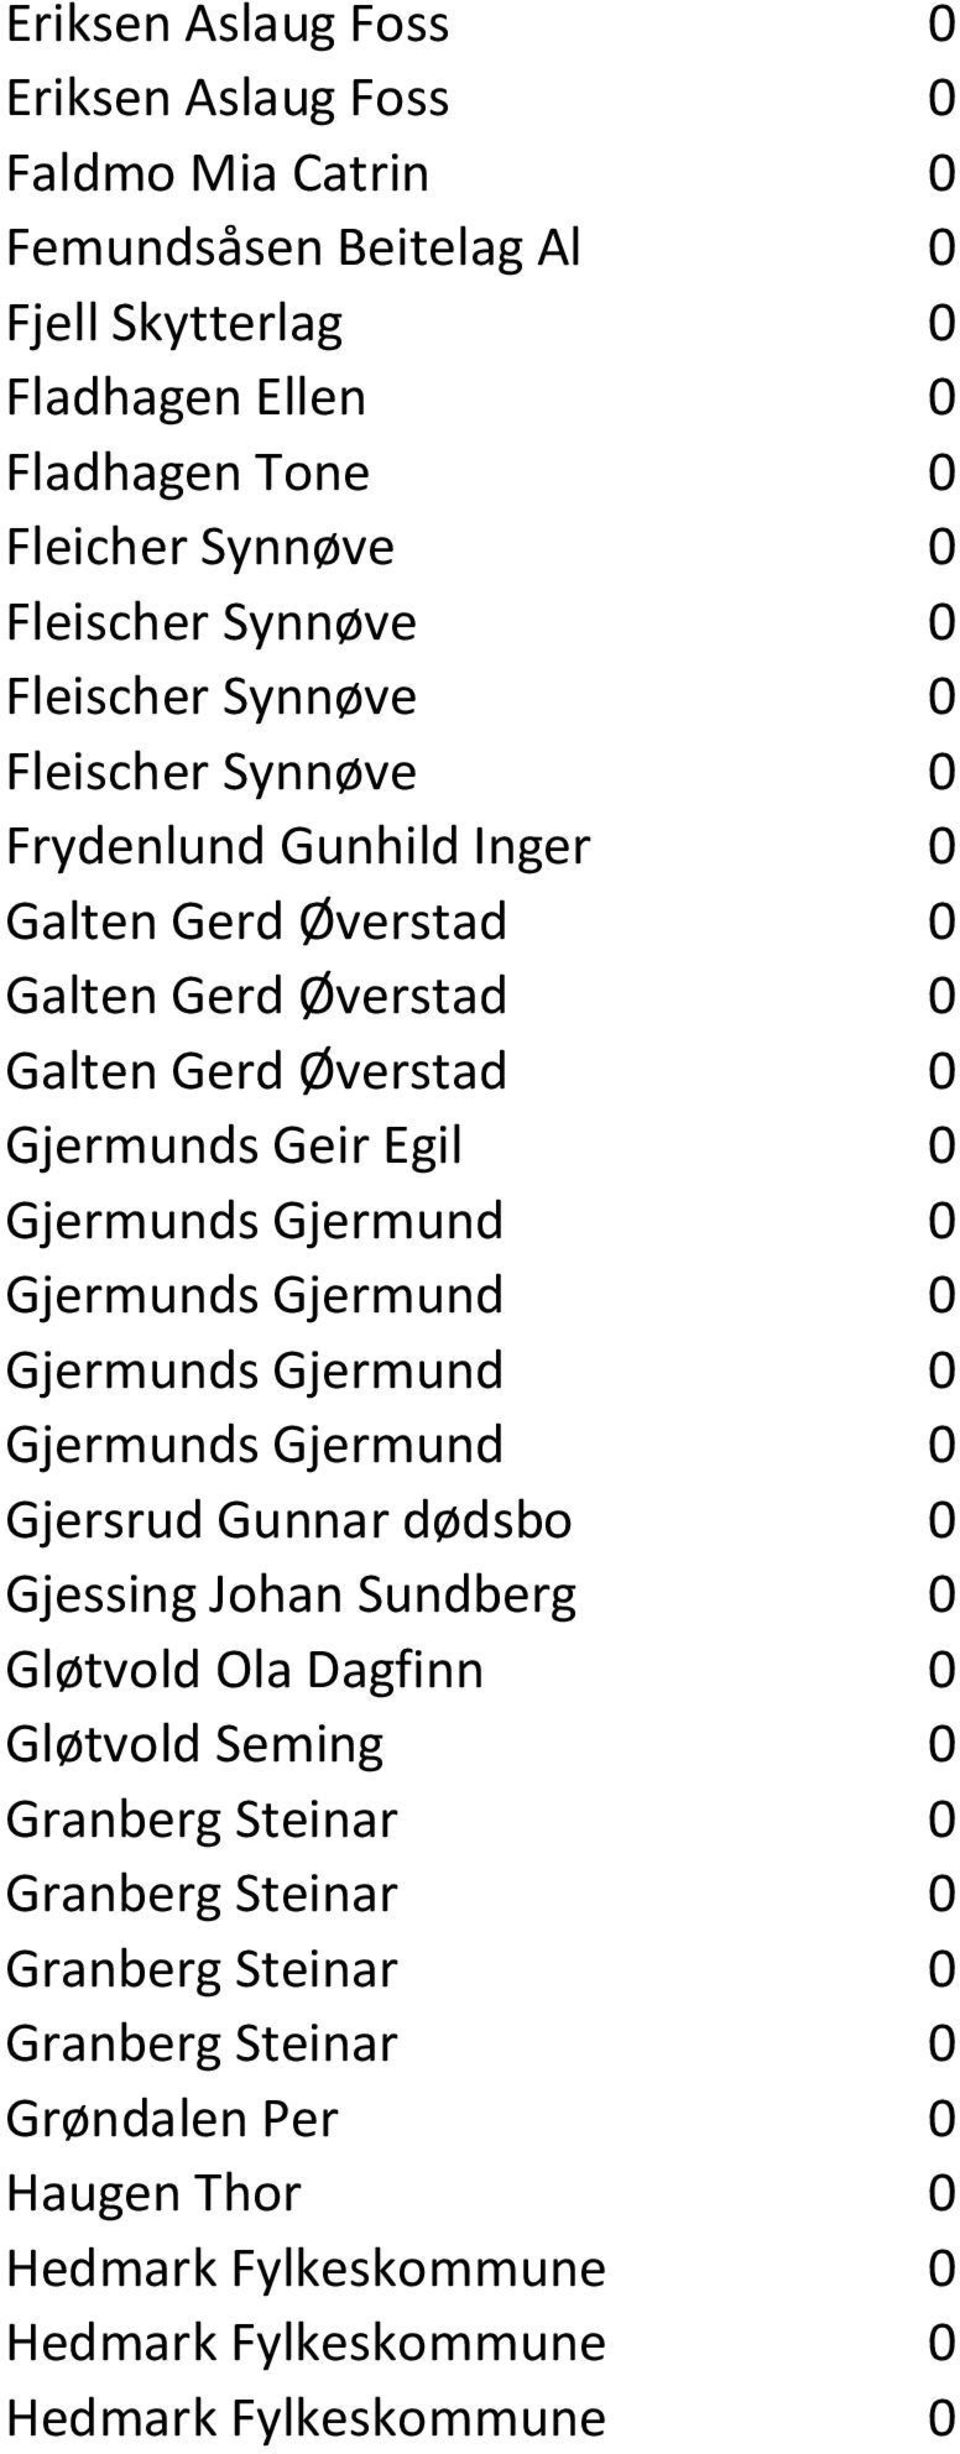 Øverstad 0 Gjermunds Geir Egil 0 Gjermunds Gjermund 0 Gjermunds Gjermund 0 Gjermunds Gjermund 0 Gjermunds Gjermund 0 Gjersrud Gunnar dødsbo 0 Gjessing